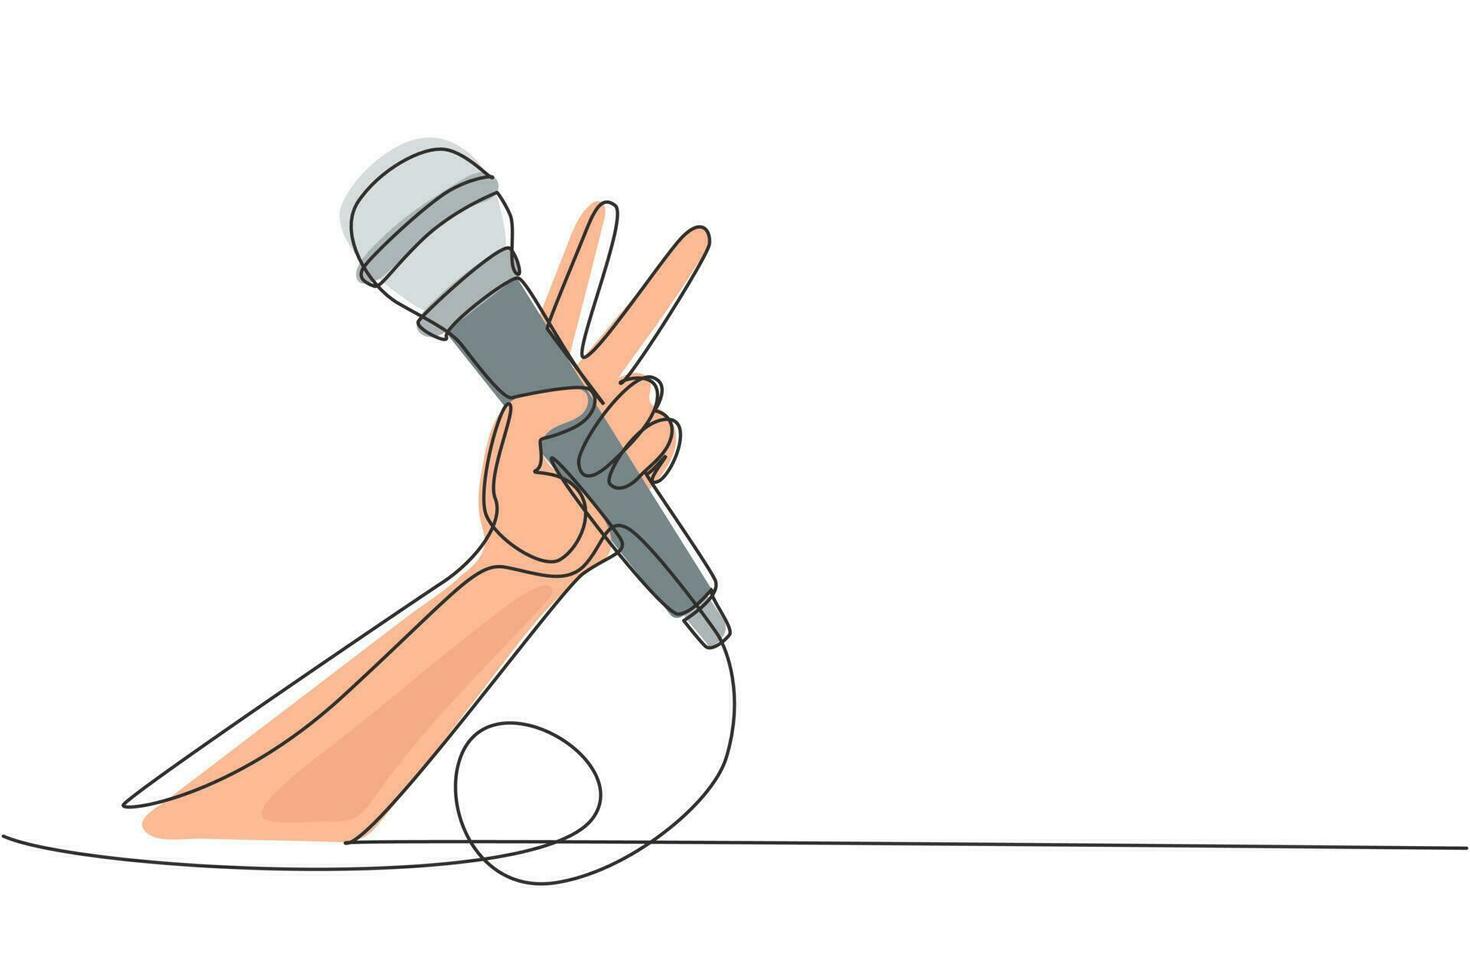 kontinuerlig en rad ritning barn håller mikrofon på vit bakgrund, närbild av handen. mikrofon med segergest. karaoke kid sjunger sång till mikrofon. enkel rad rita design vektorillustration vektor